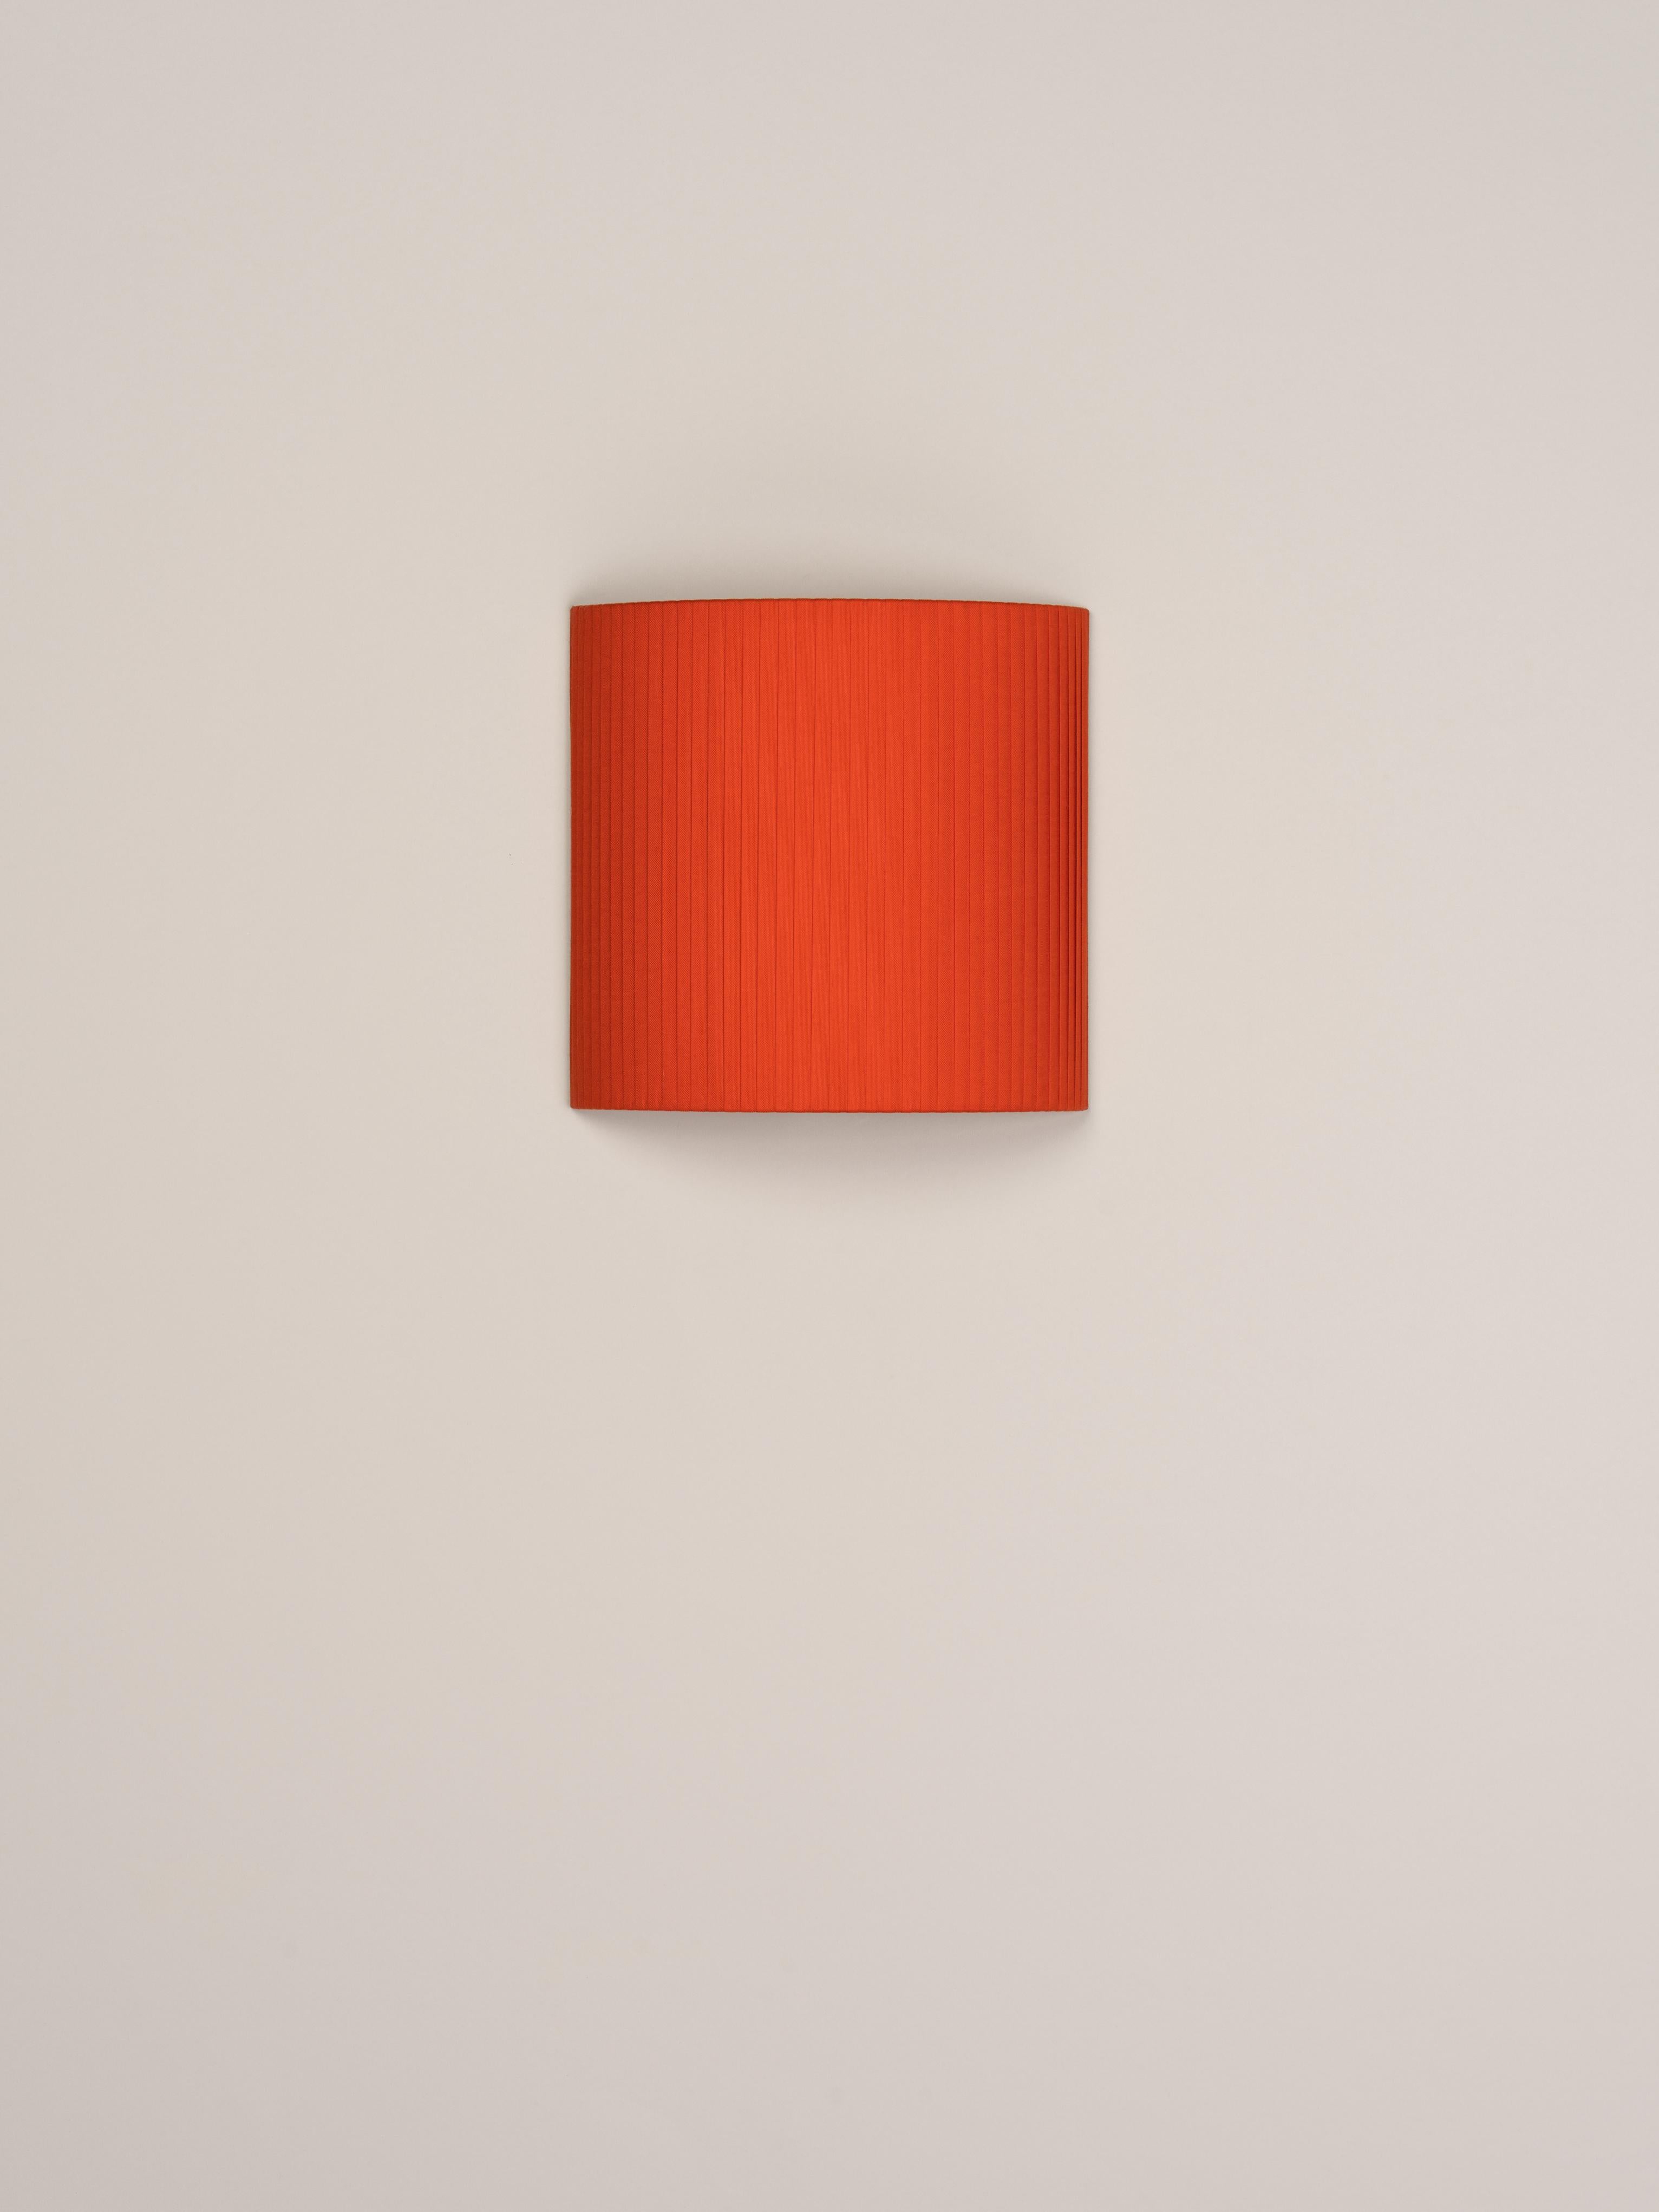 Rote Wandleuchte Comodín Cuadrado von Santa & Cole
Abmessungen: T 31 x B 13 x H 30 cm
MATERIALIEN: Metall, Bänder.

Diese minimalistische Wandleuchte vermenschlicht neutrale Räume mit ihrer farbenfrohen und funktionalen Nüchternheit. Der Schirm wird